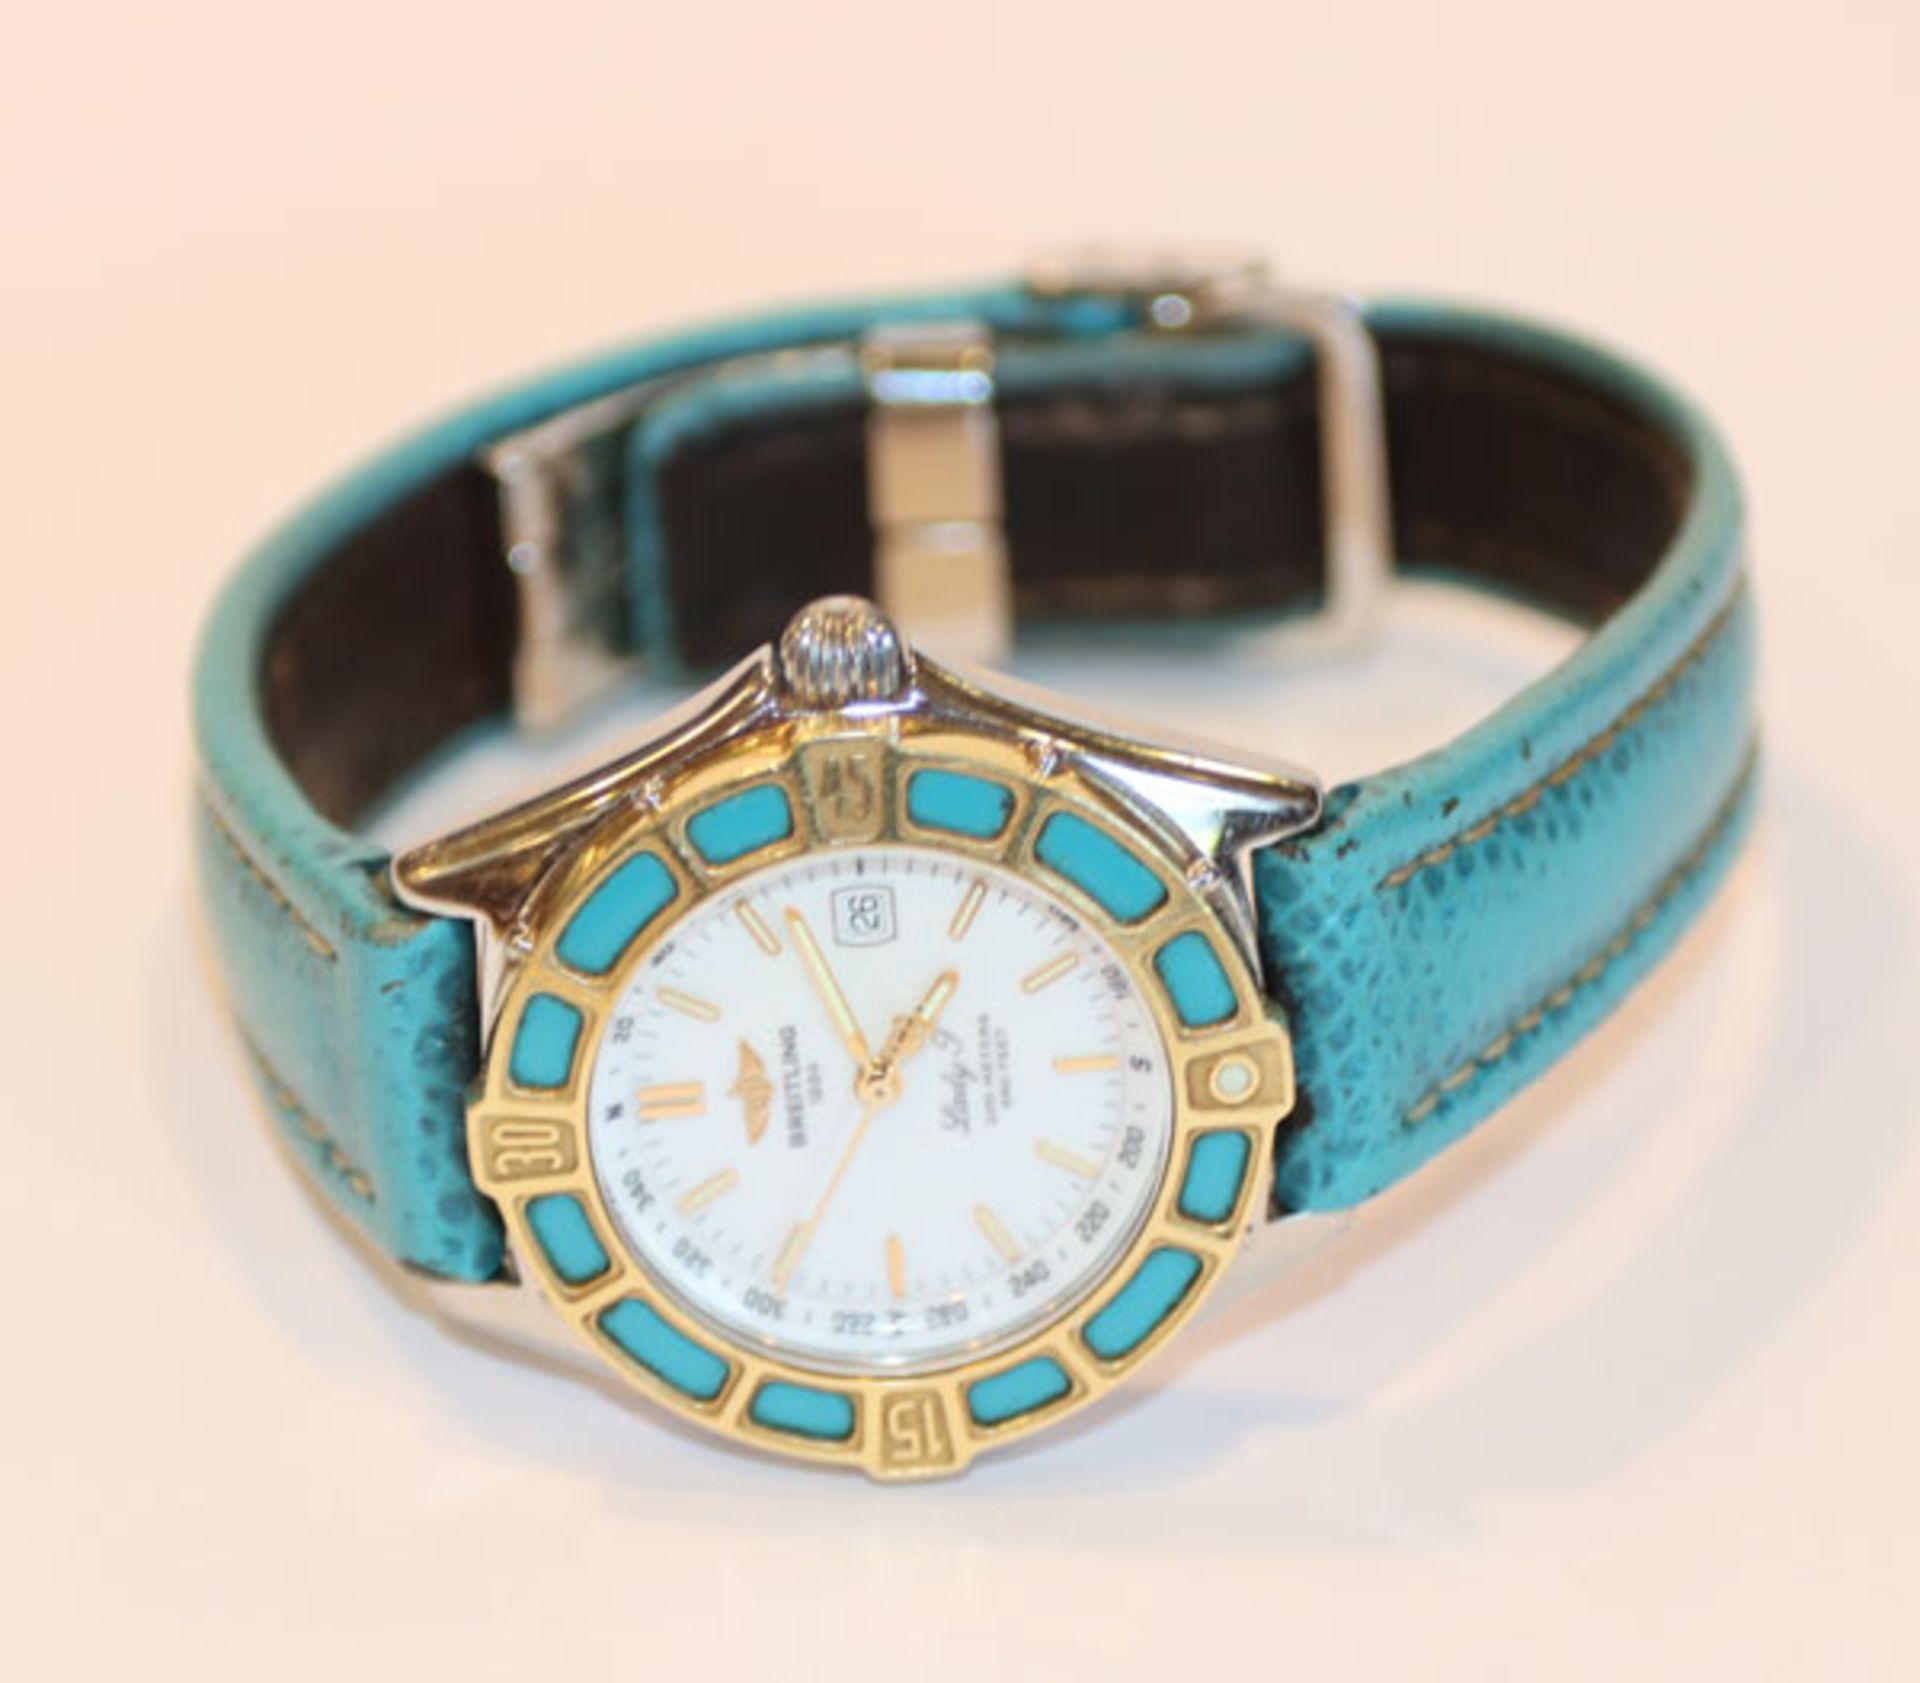 Breitling Damen-Armbanduhr Lady J, Stahl/Gold, mit türkisfarbenem Original-Armband, intakt, benötigt